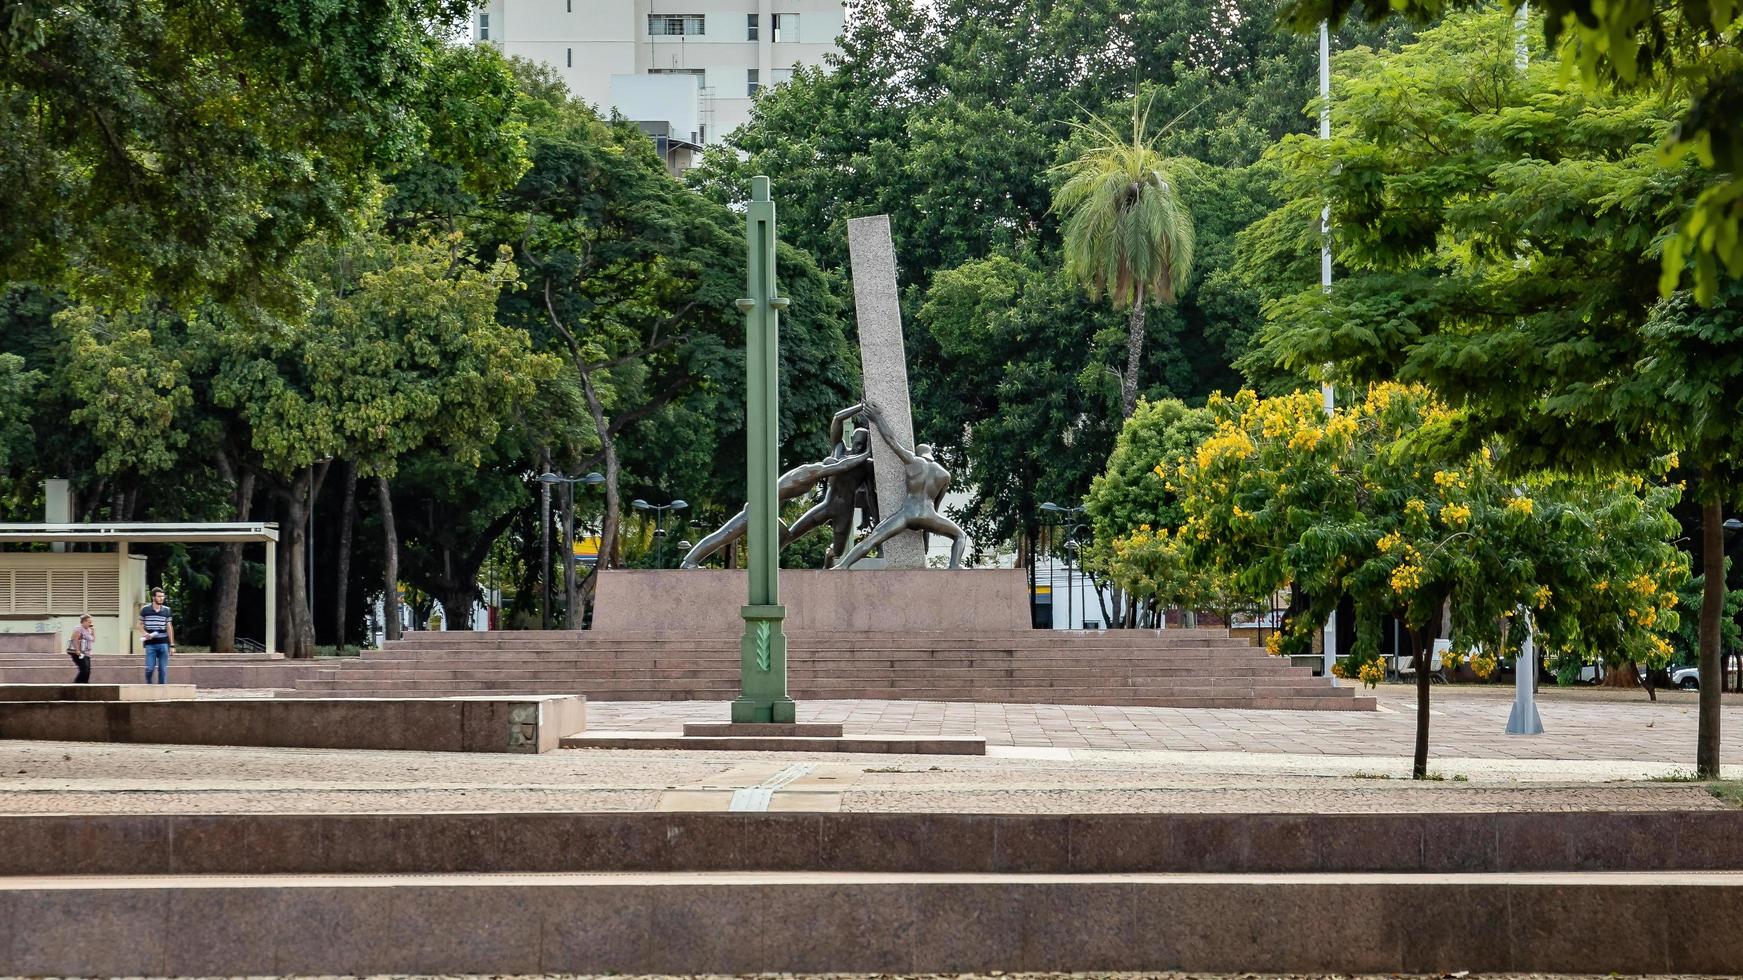 goiania, goias, brazilië, 2019 - monument voor de drie races foto